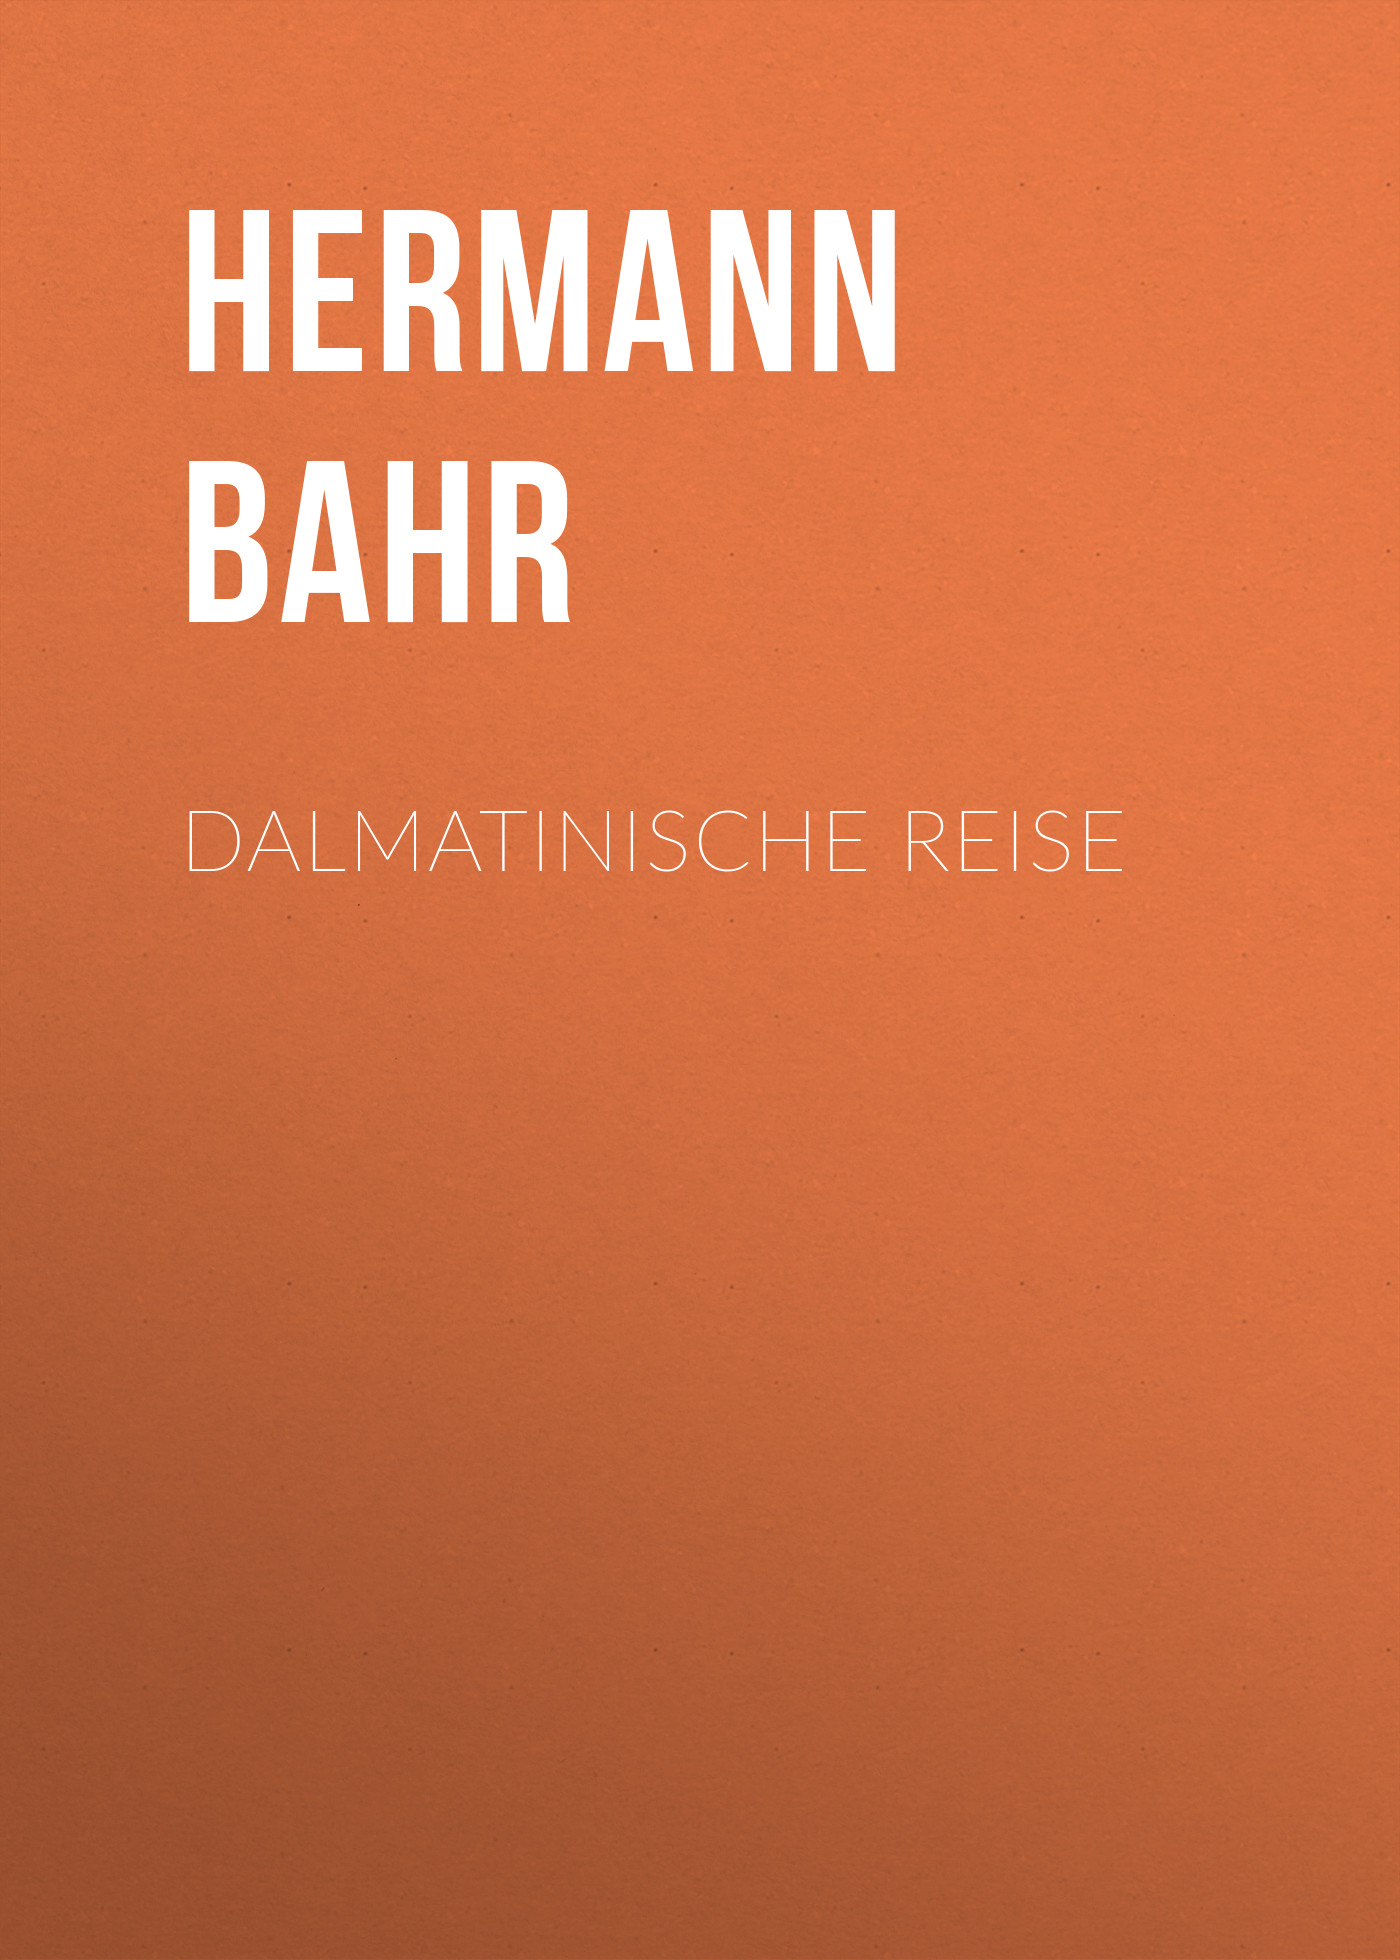 Книга Dalmatinische Reise из серии , созданная Hermann Bahr, может относится к жанру Зарубежная старинная литература, Зарубежная классика. Стоимость электронной книги Dalmatinische Reise с идентификатором 24176812 составляет 0 руб.